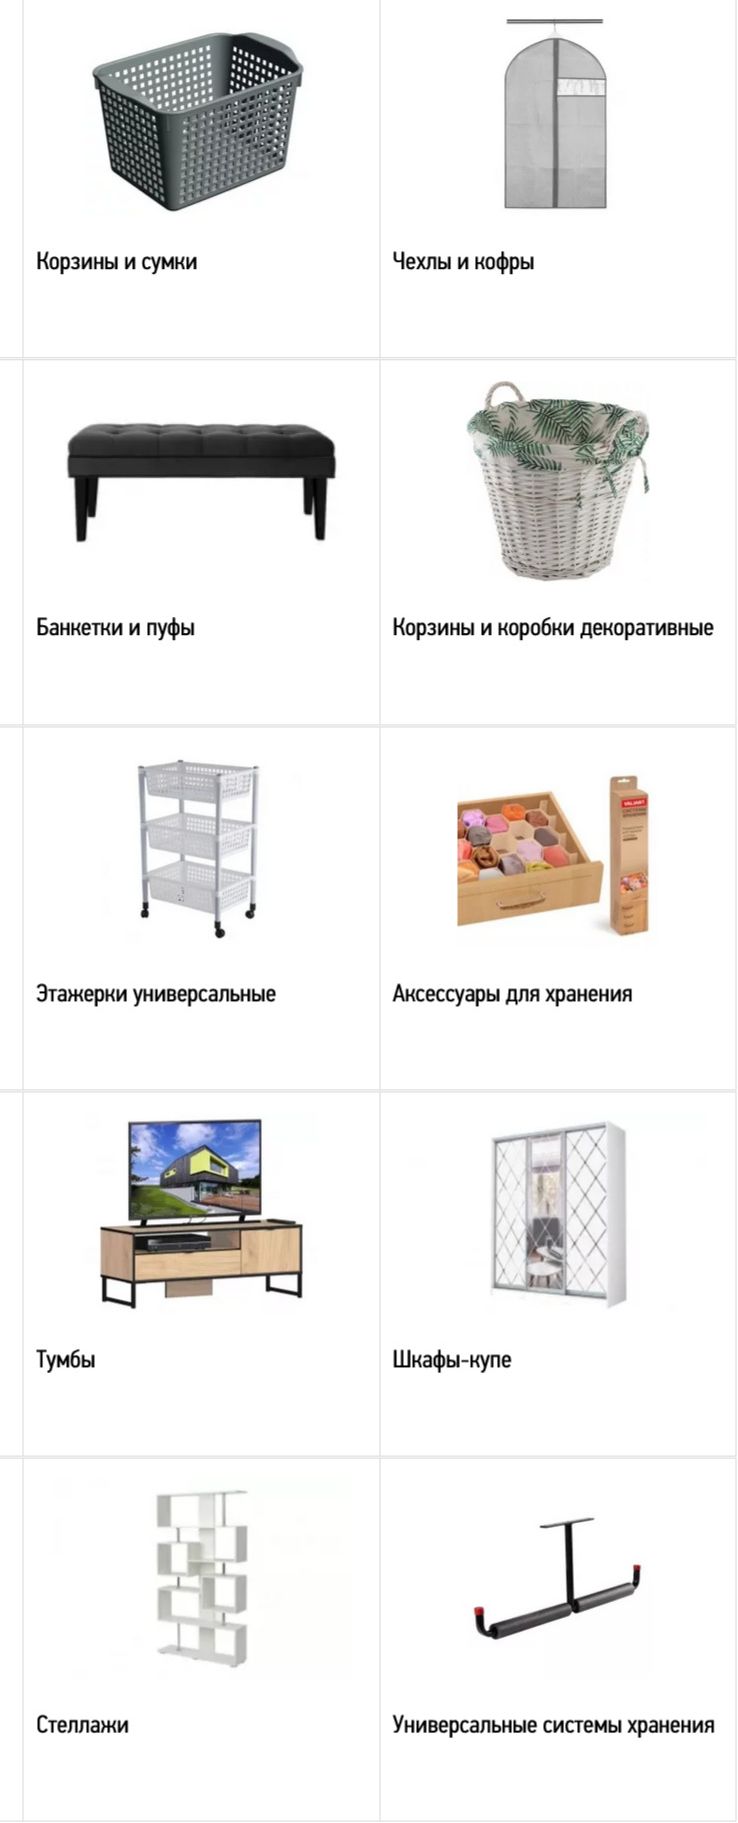 Хранение, мебель в Мегастрой  Серпухов 